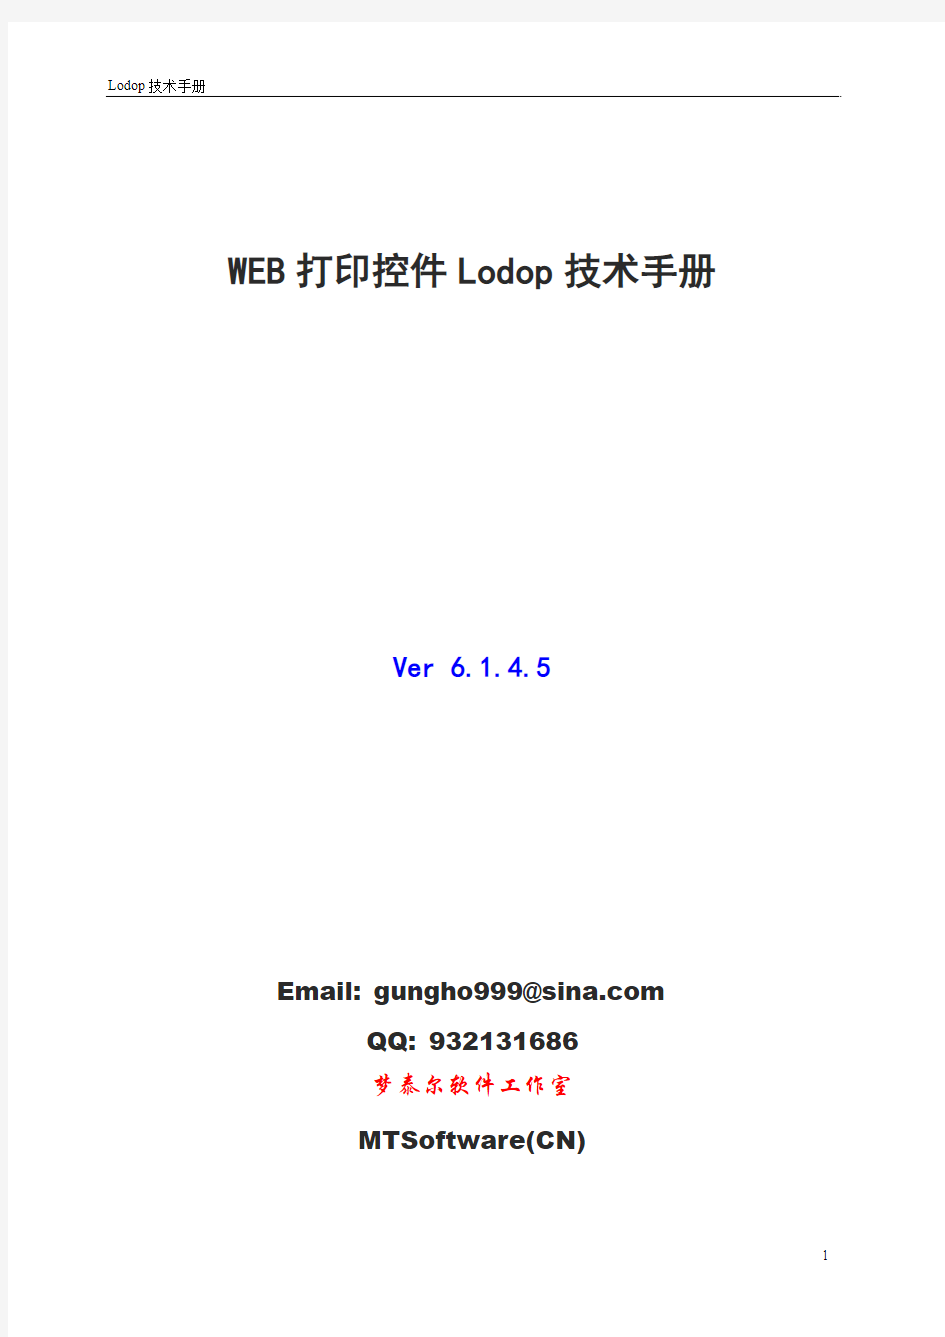 Lodop6.1打印控件技术手册(教程)